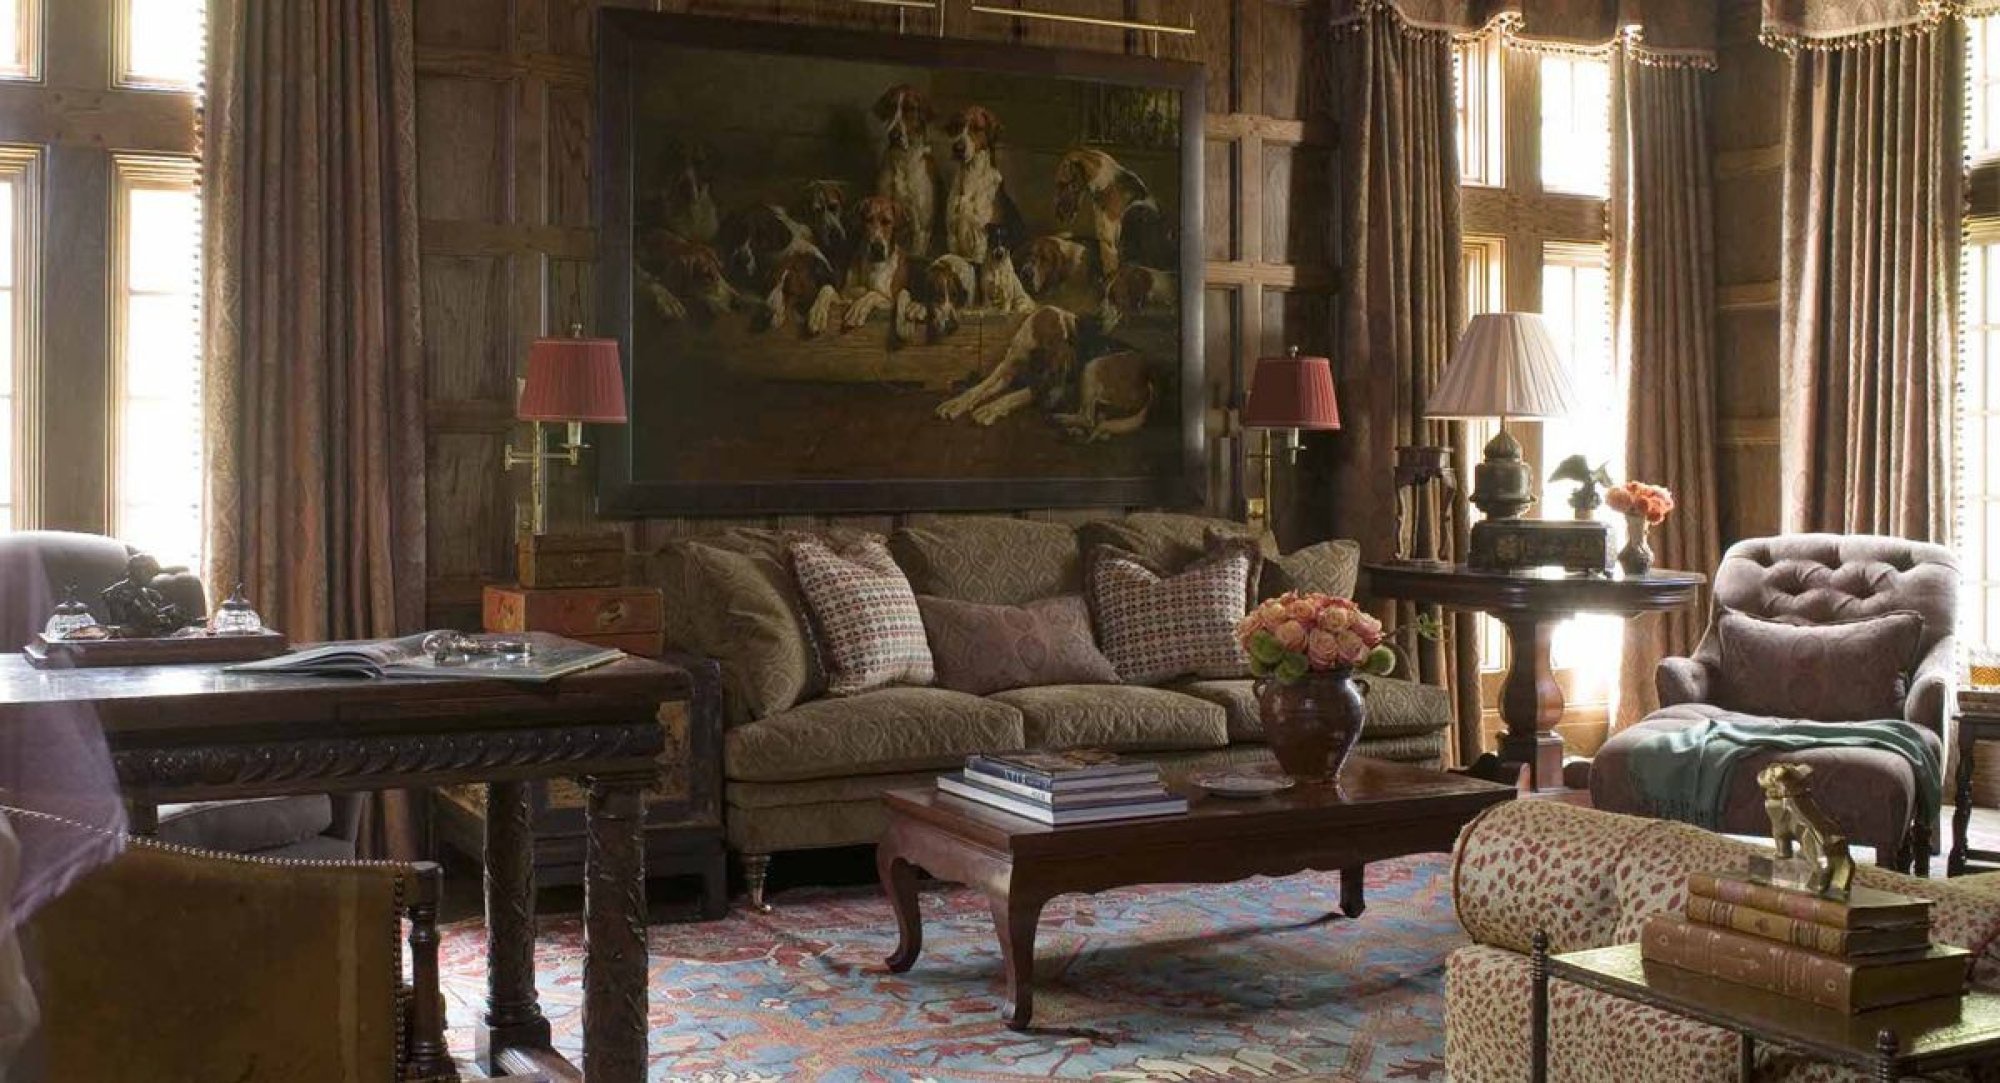 Old living room. Интерьер Кантри Викторианский стиль. Английский колониальный стиль Моррис. Викторианский стиль интерьера в Англии 19 века. Нео Викторианский стиль в интерьере.